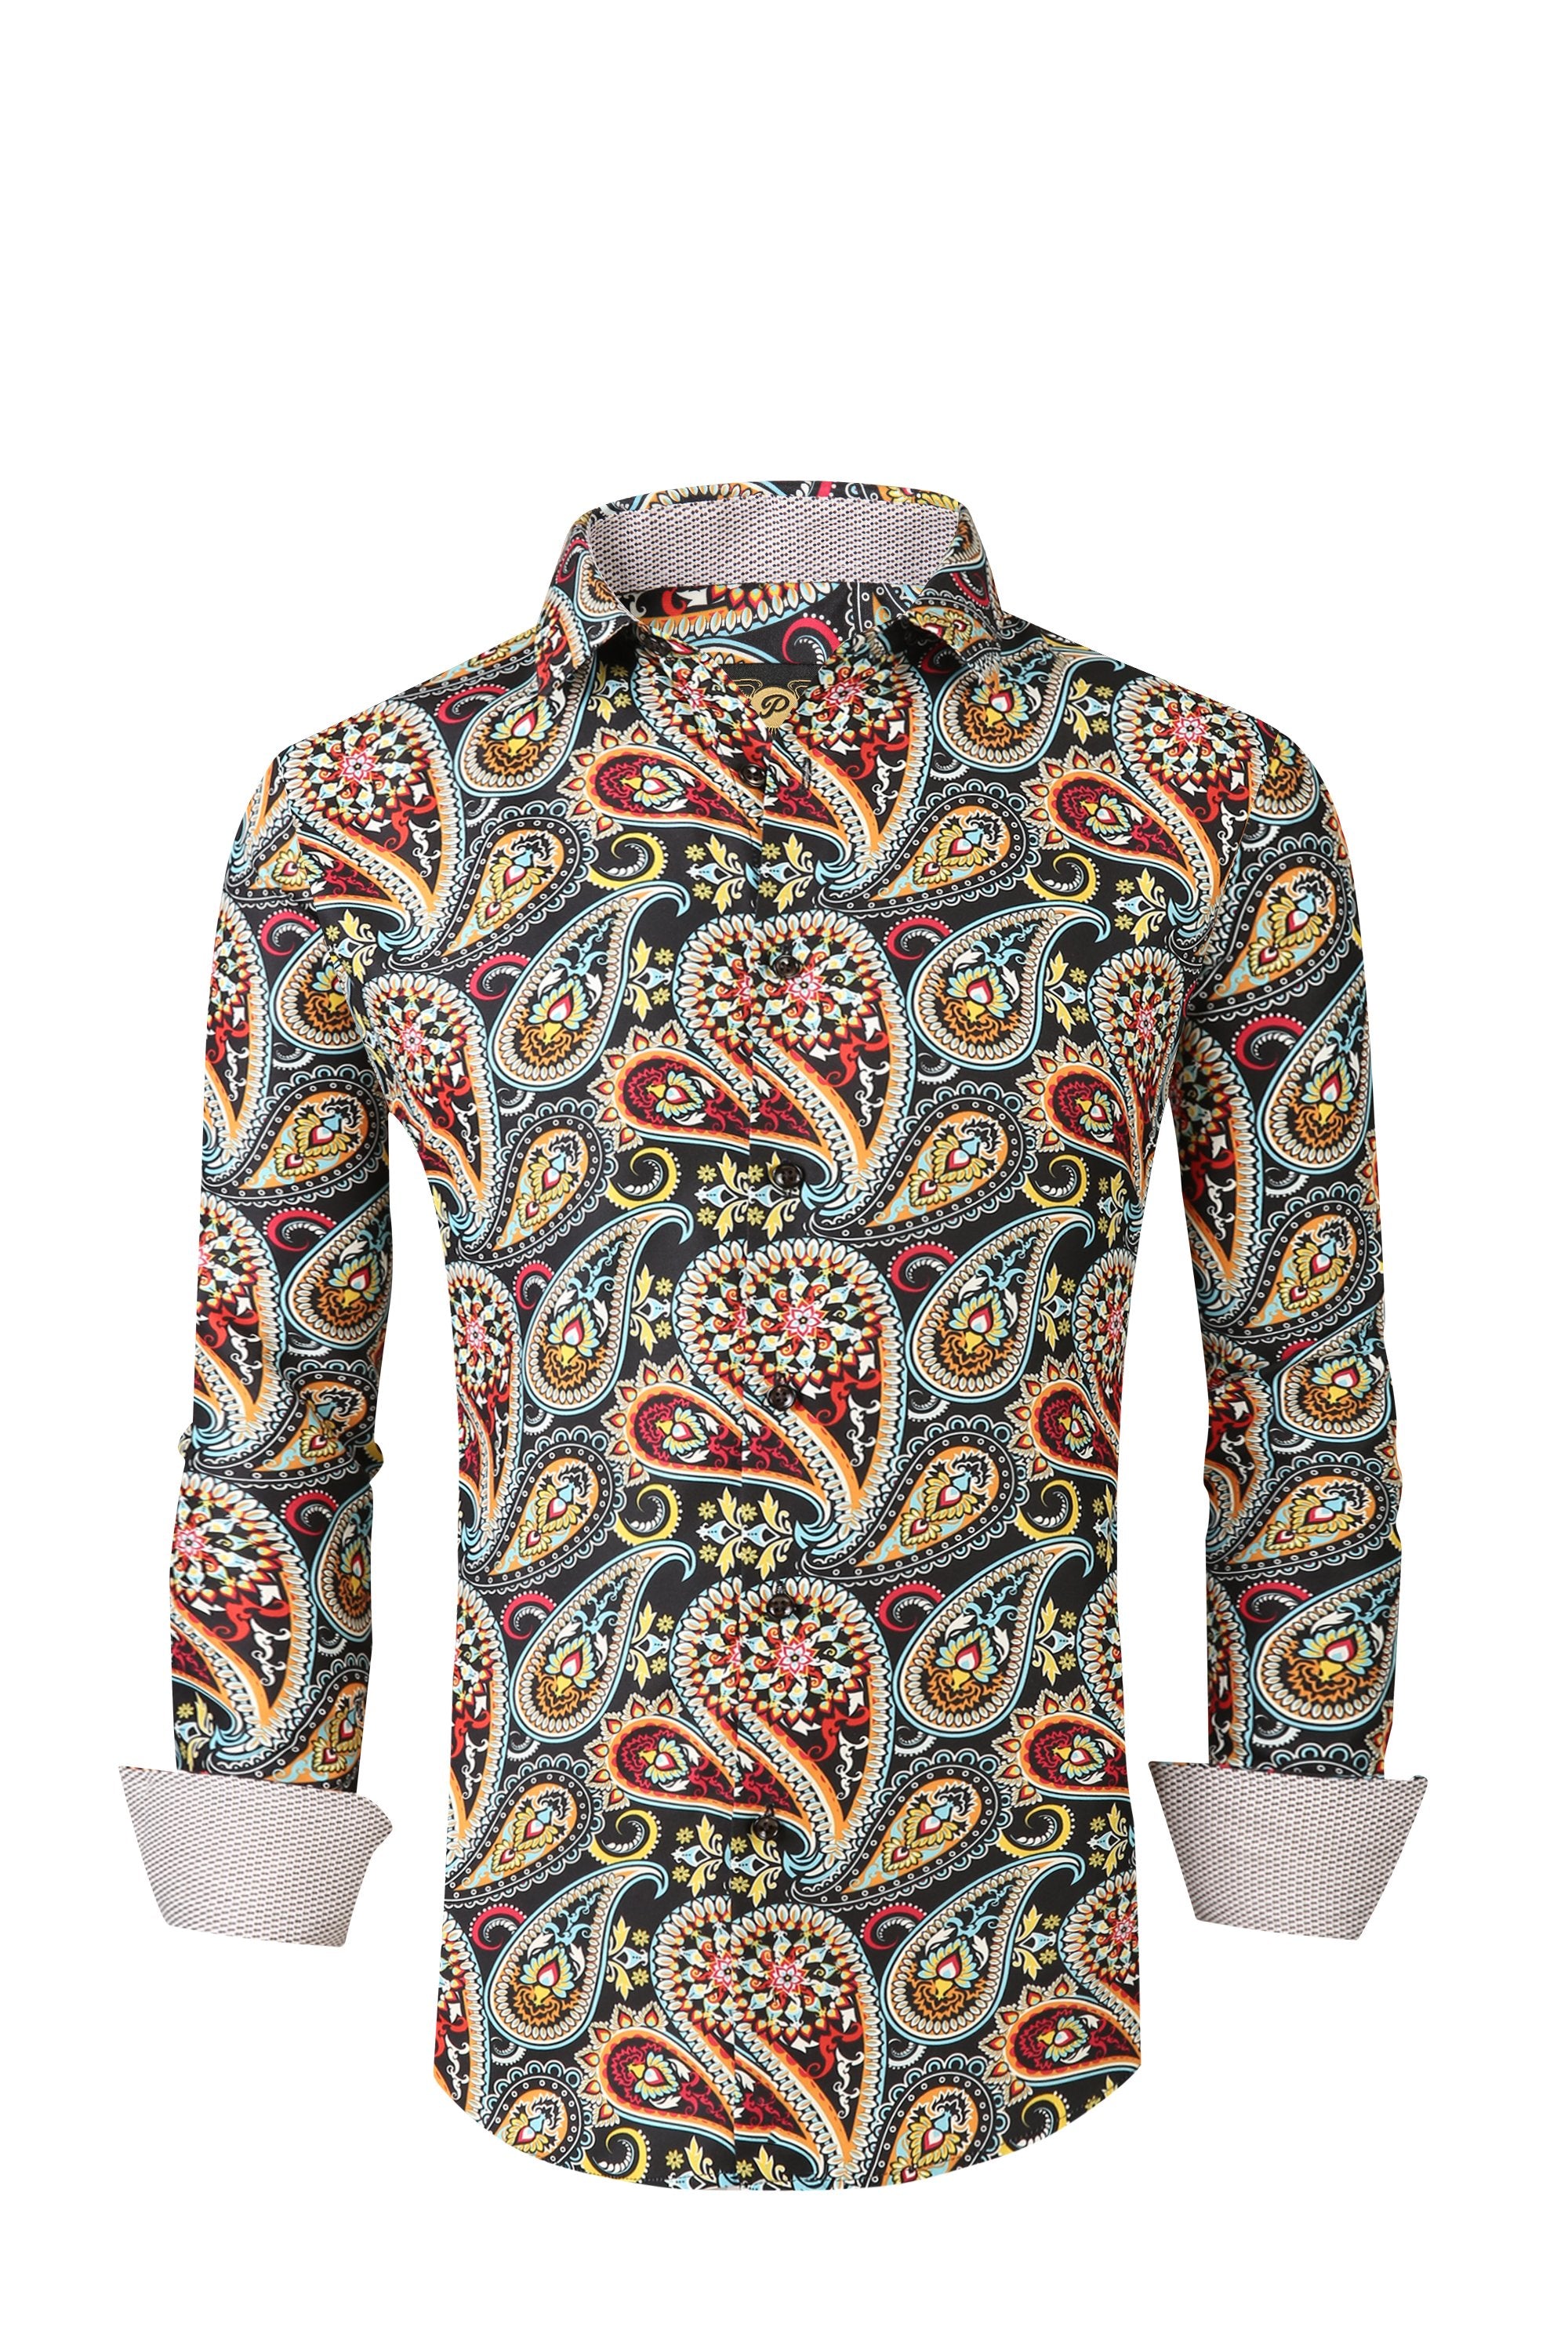 PREMIERE SHIRTS: COLORFUL FLORAL PAISLEY – Premiere Designer Shirts